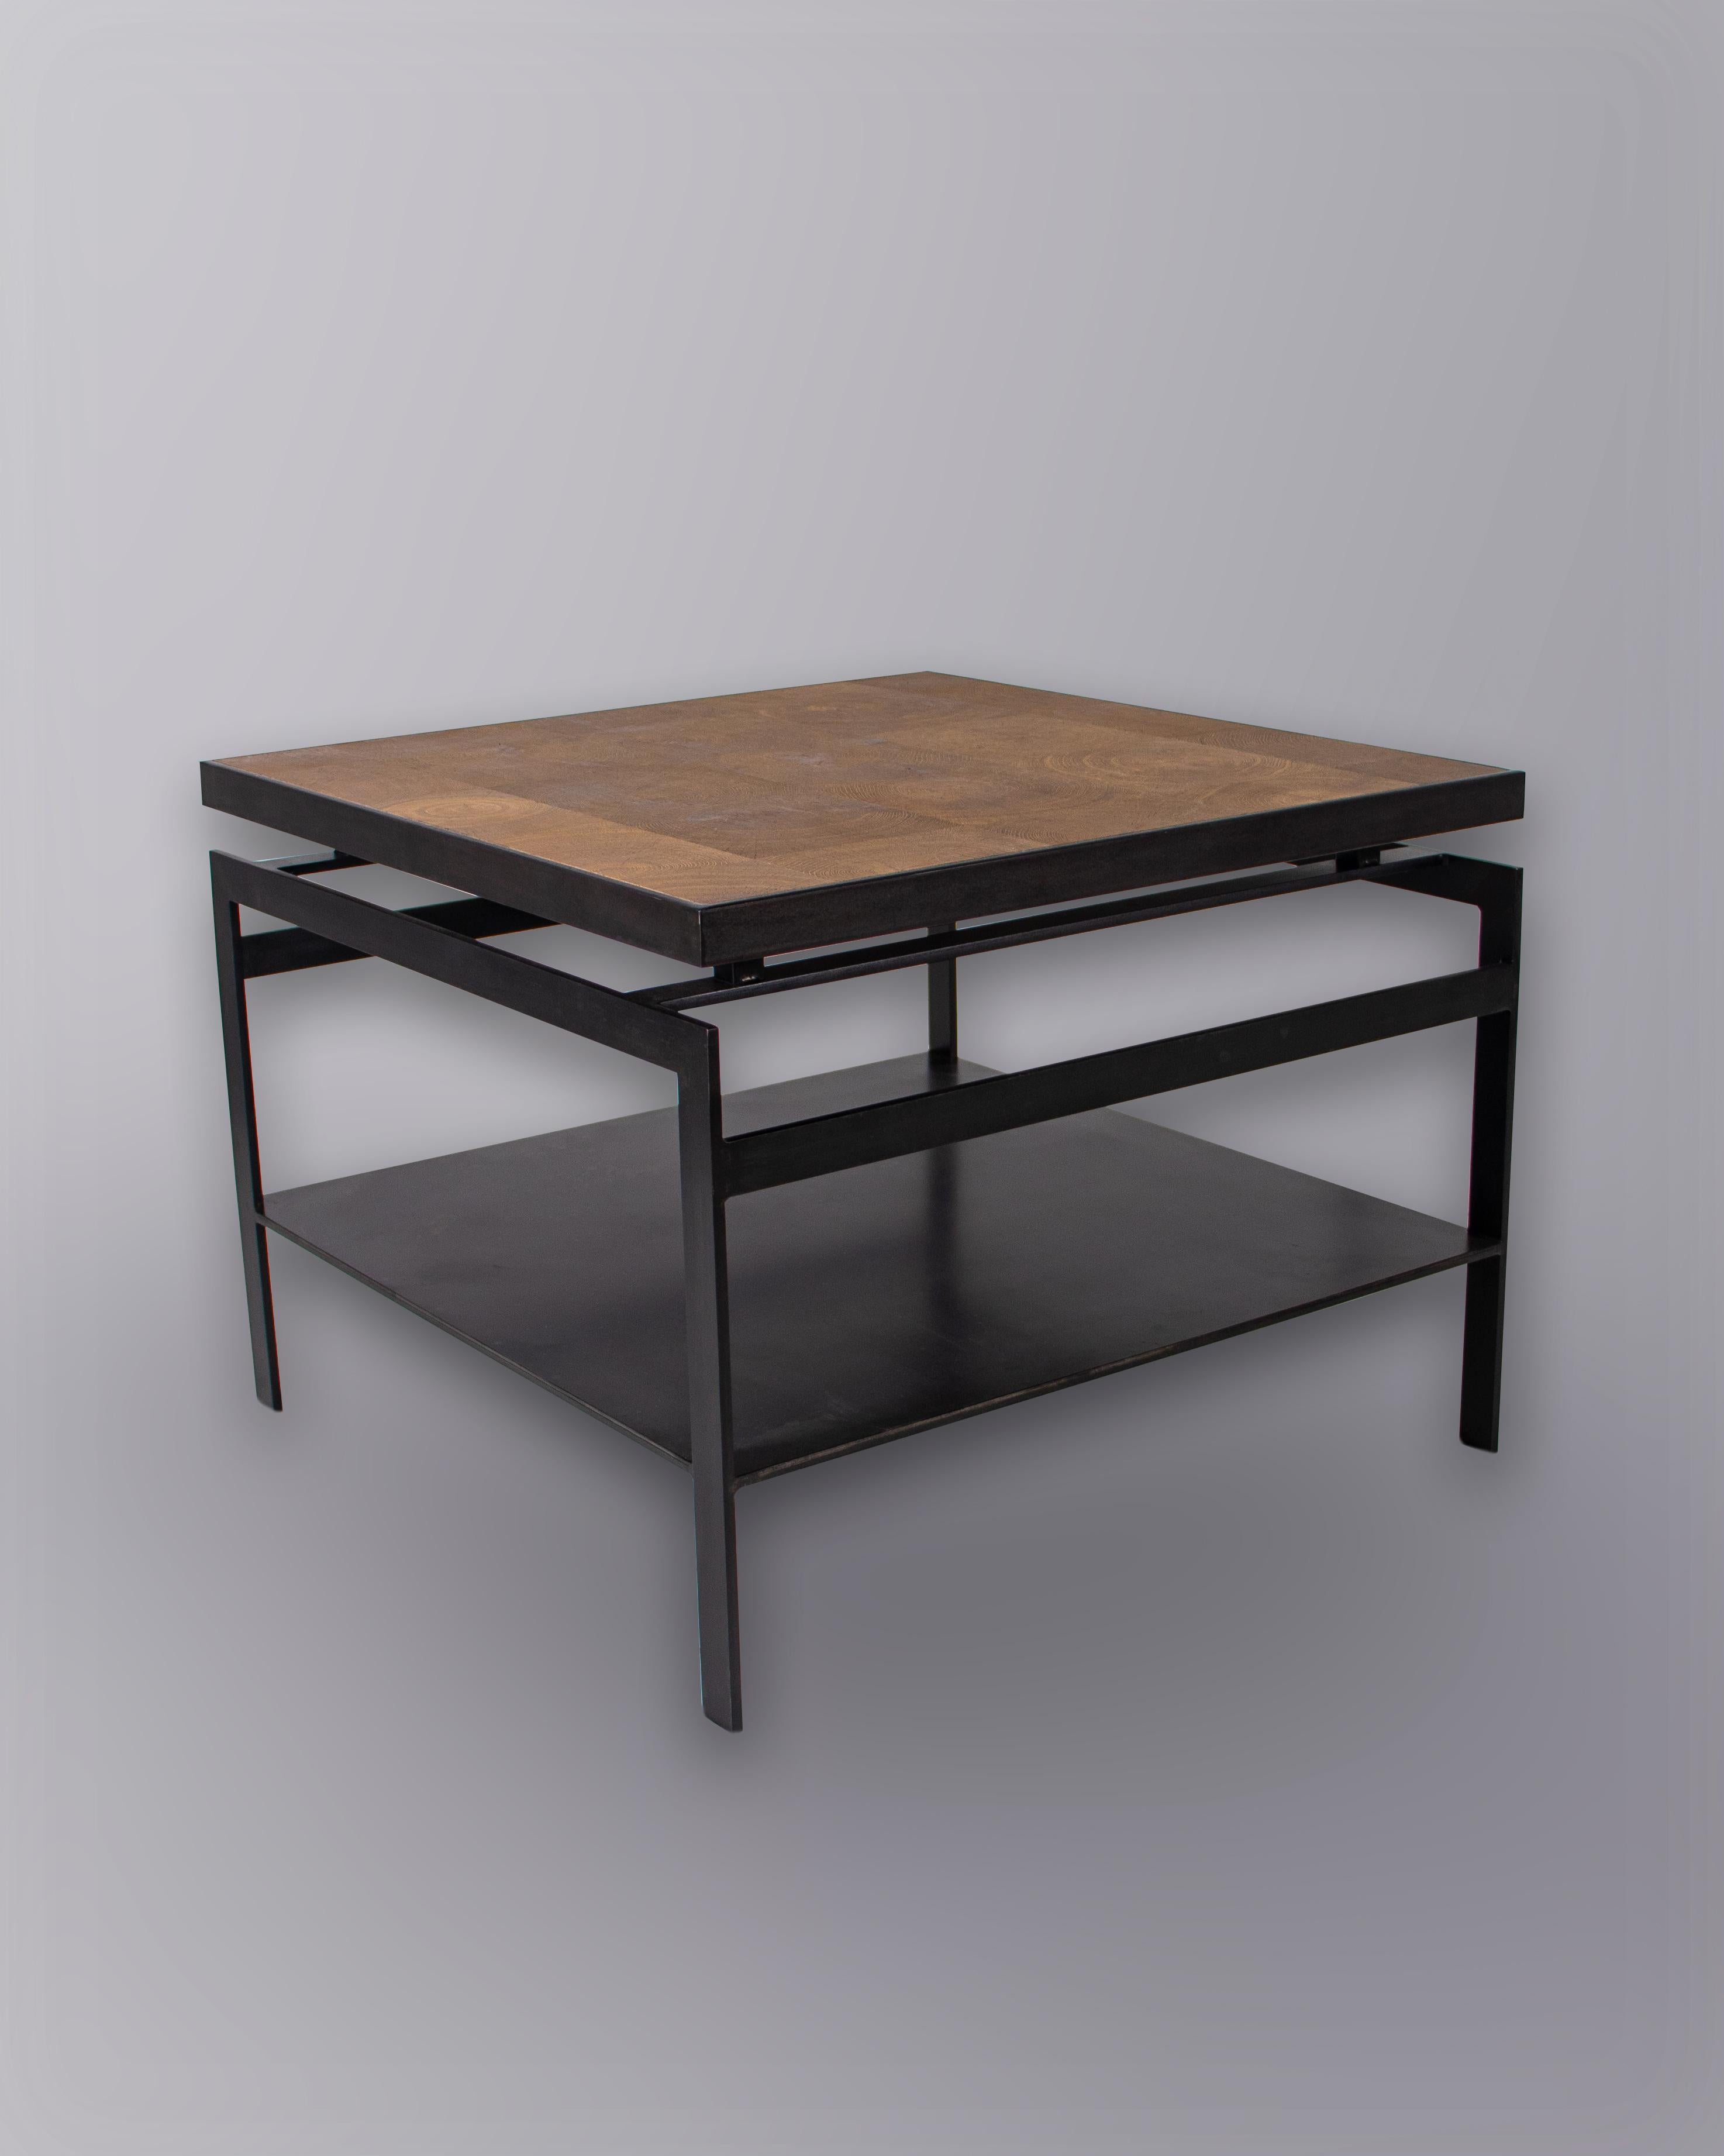 Table d'appoint minimaliste en acier noir massif avec plateau en chêne naturel.

Conçue par Brendan Bass pour la Collection Design/One, en utilisant des matériaux et des textures de haute qualité. Tous les matériaux proviennent de fournisseurs